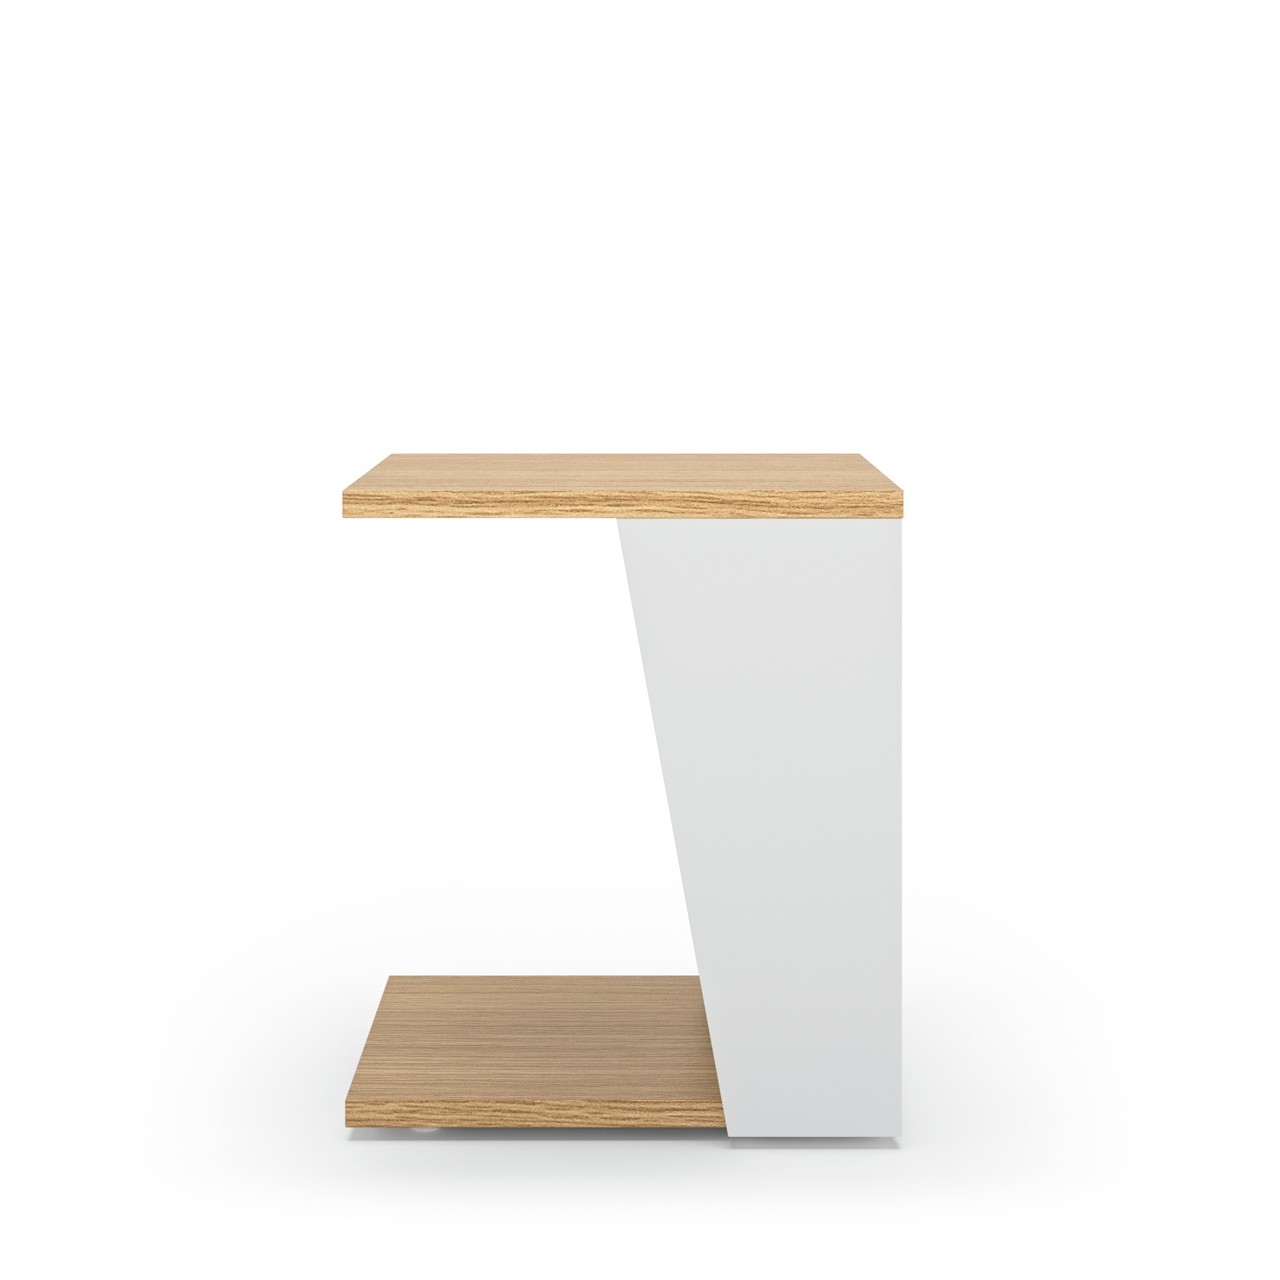 A mesa de apoio Albi é a solução perfeita para quem procura um móvel moderno, prático e com estilo. Uma peça que combina elegância e funcionalidade na decoração da sua casa!